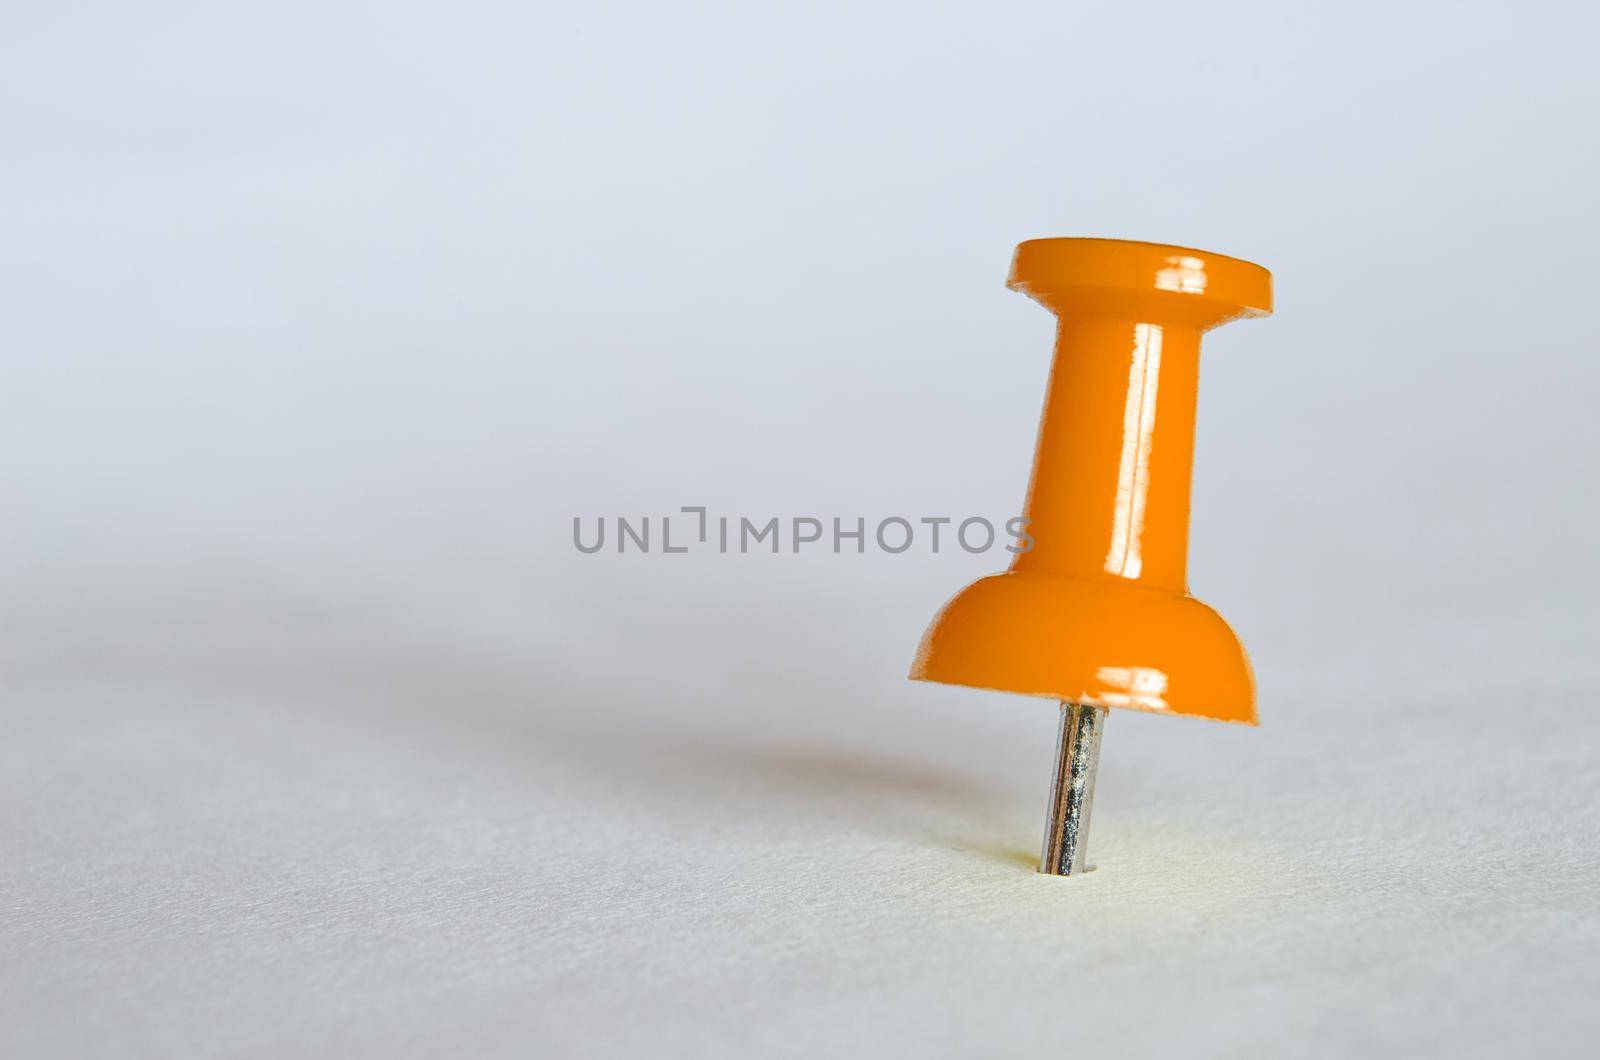 Orange push pin. Closeup photography of orange thumbtack.